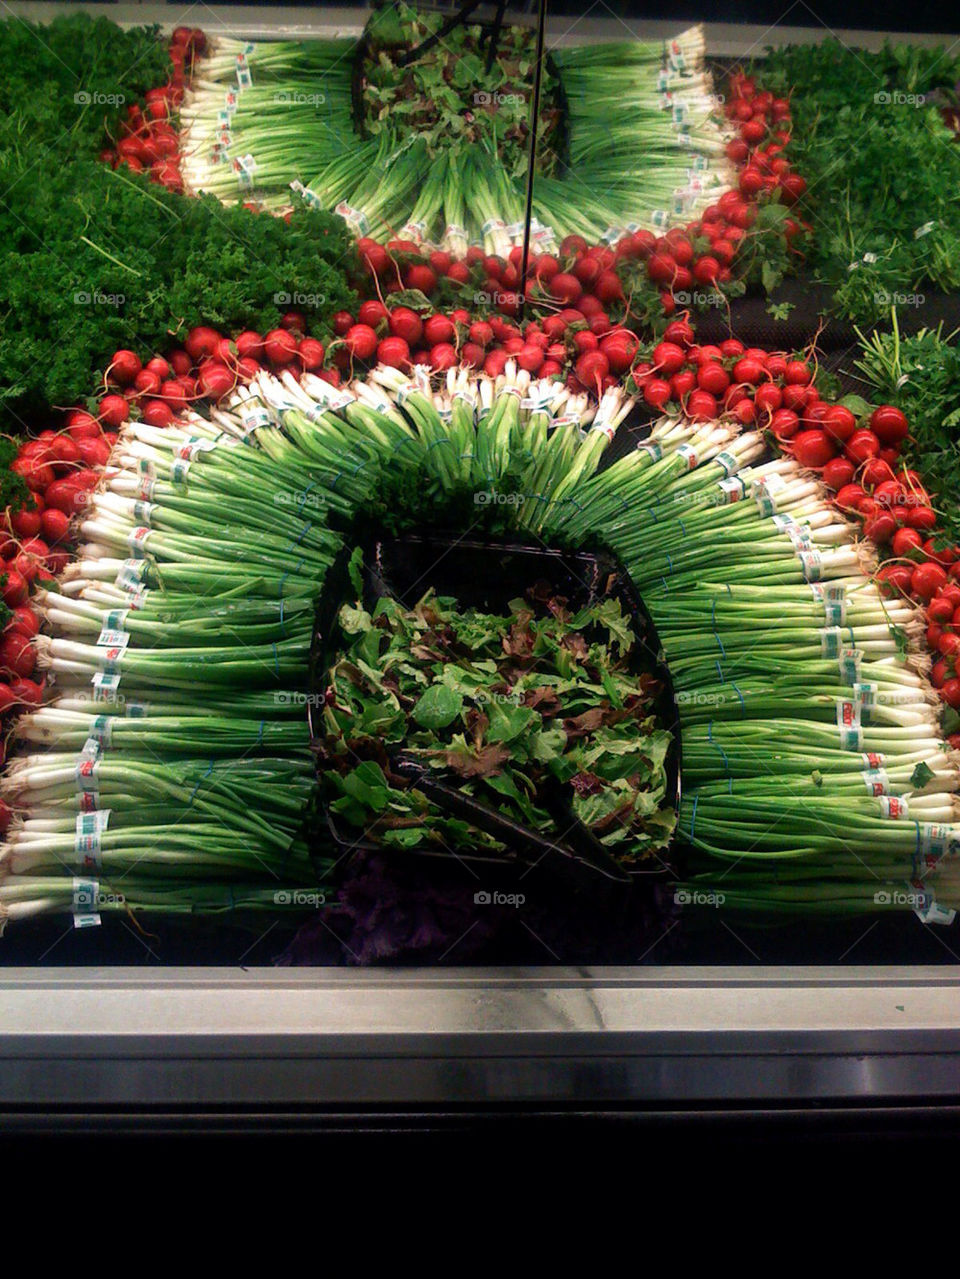 green red vegetables lettuce by pepsilovr